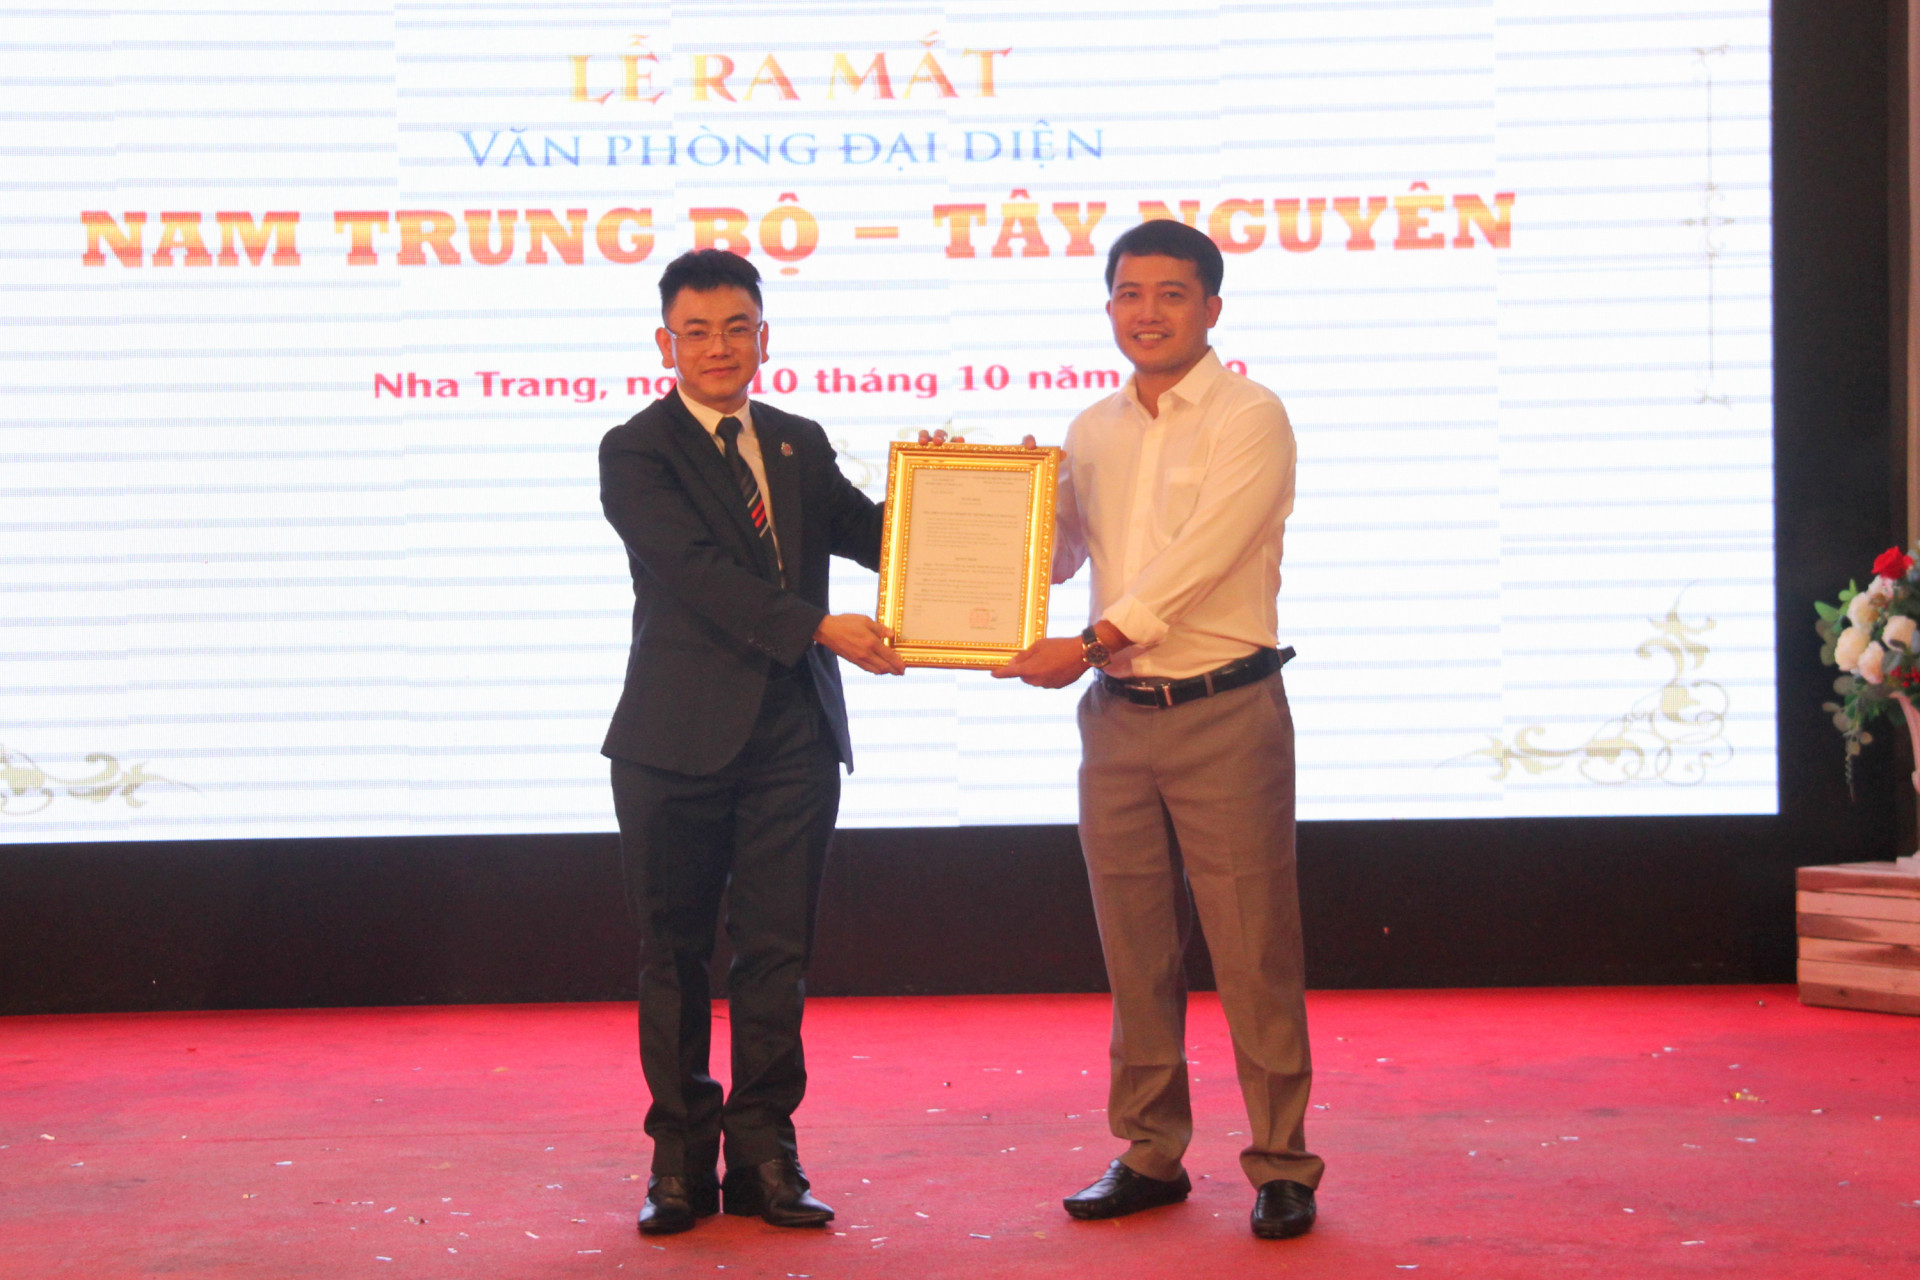 Nhà báo Đào Bình – Tổng biên tập Tạp chí điện tử Thương hiệu và Pháp luật trao quyết định thành lập Văn phòng đại diện Nam Trung Bộ - Tây Nguyên.